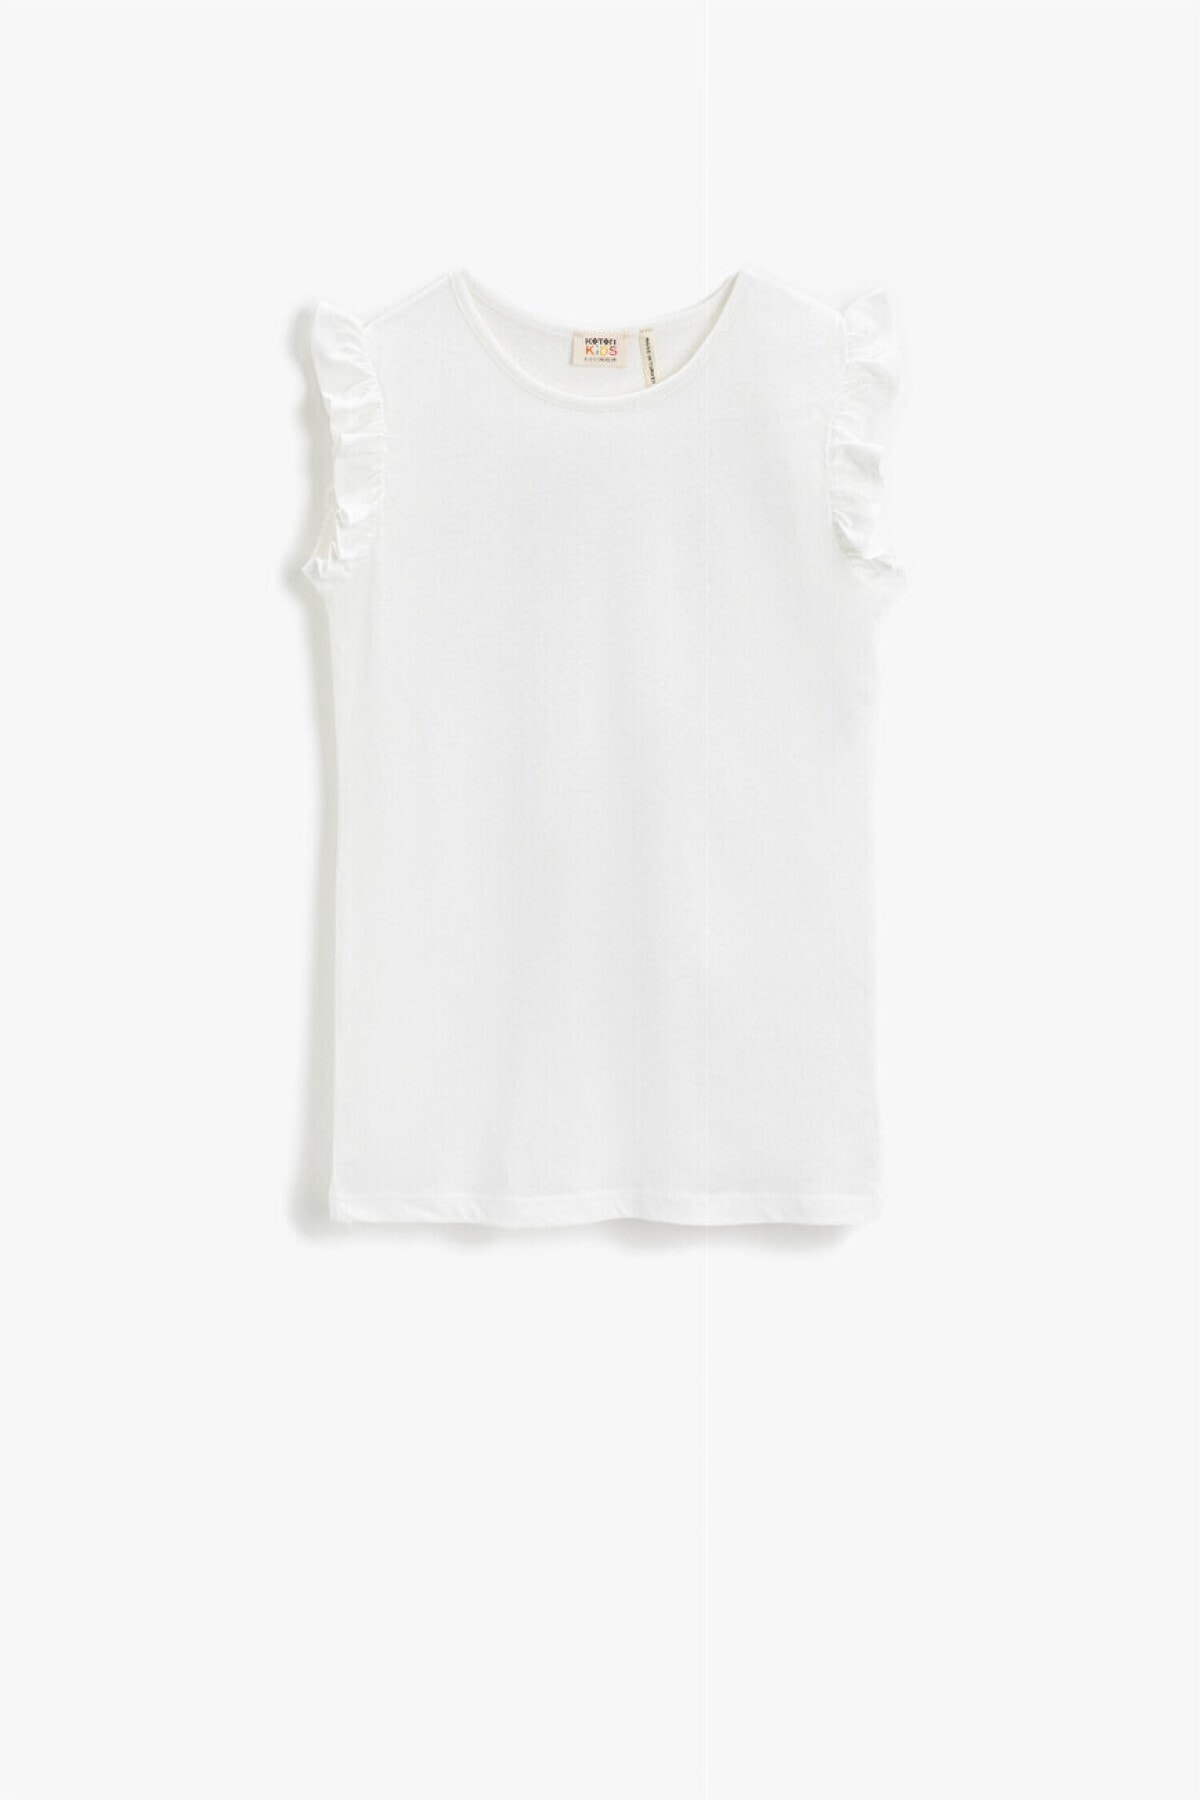 Koton T-Shirt Weiß Figurbetont Fast ausverkauft